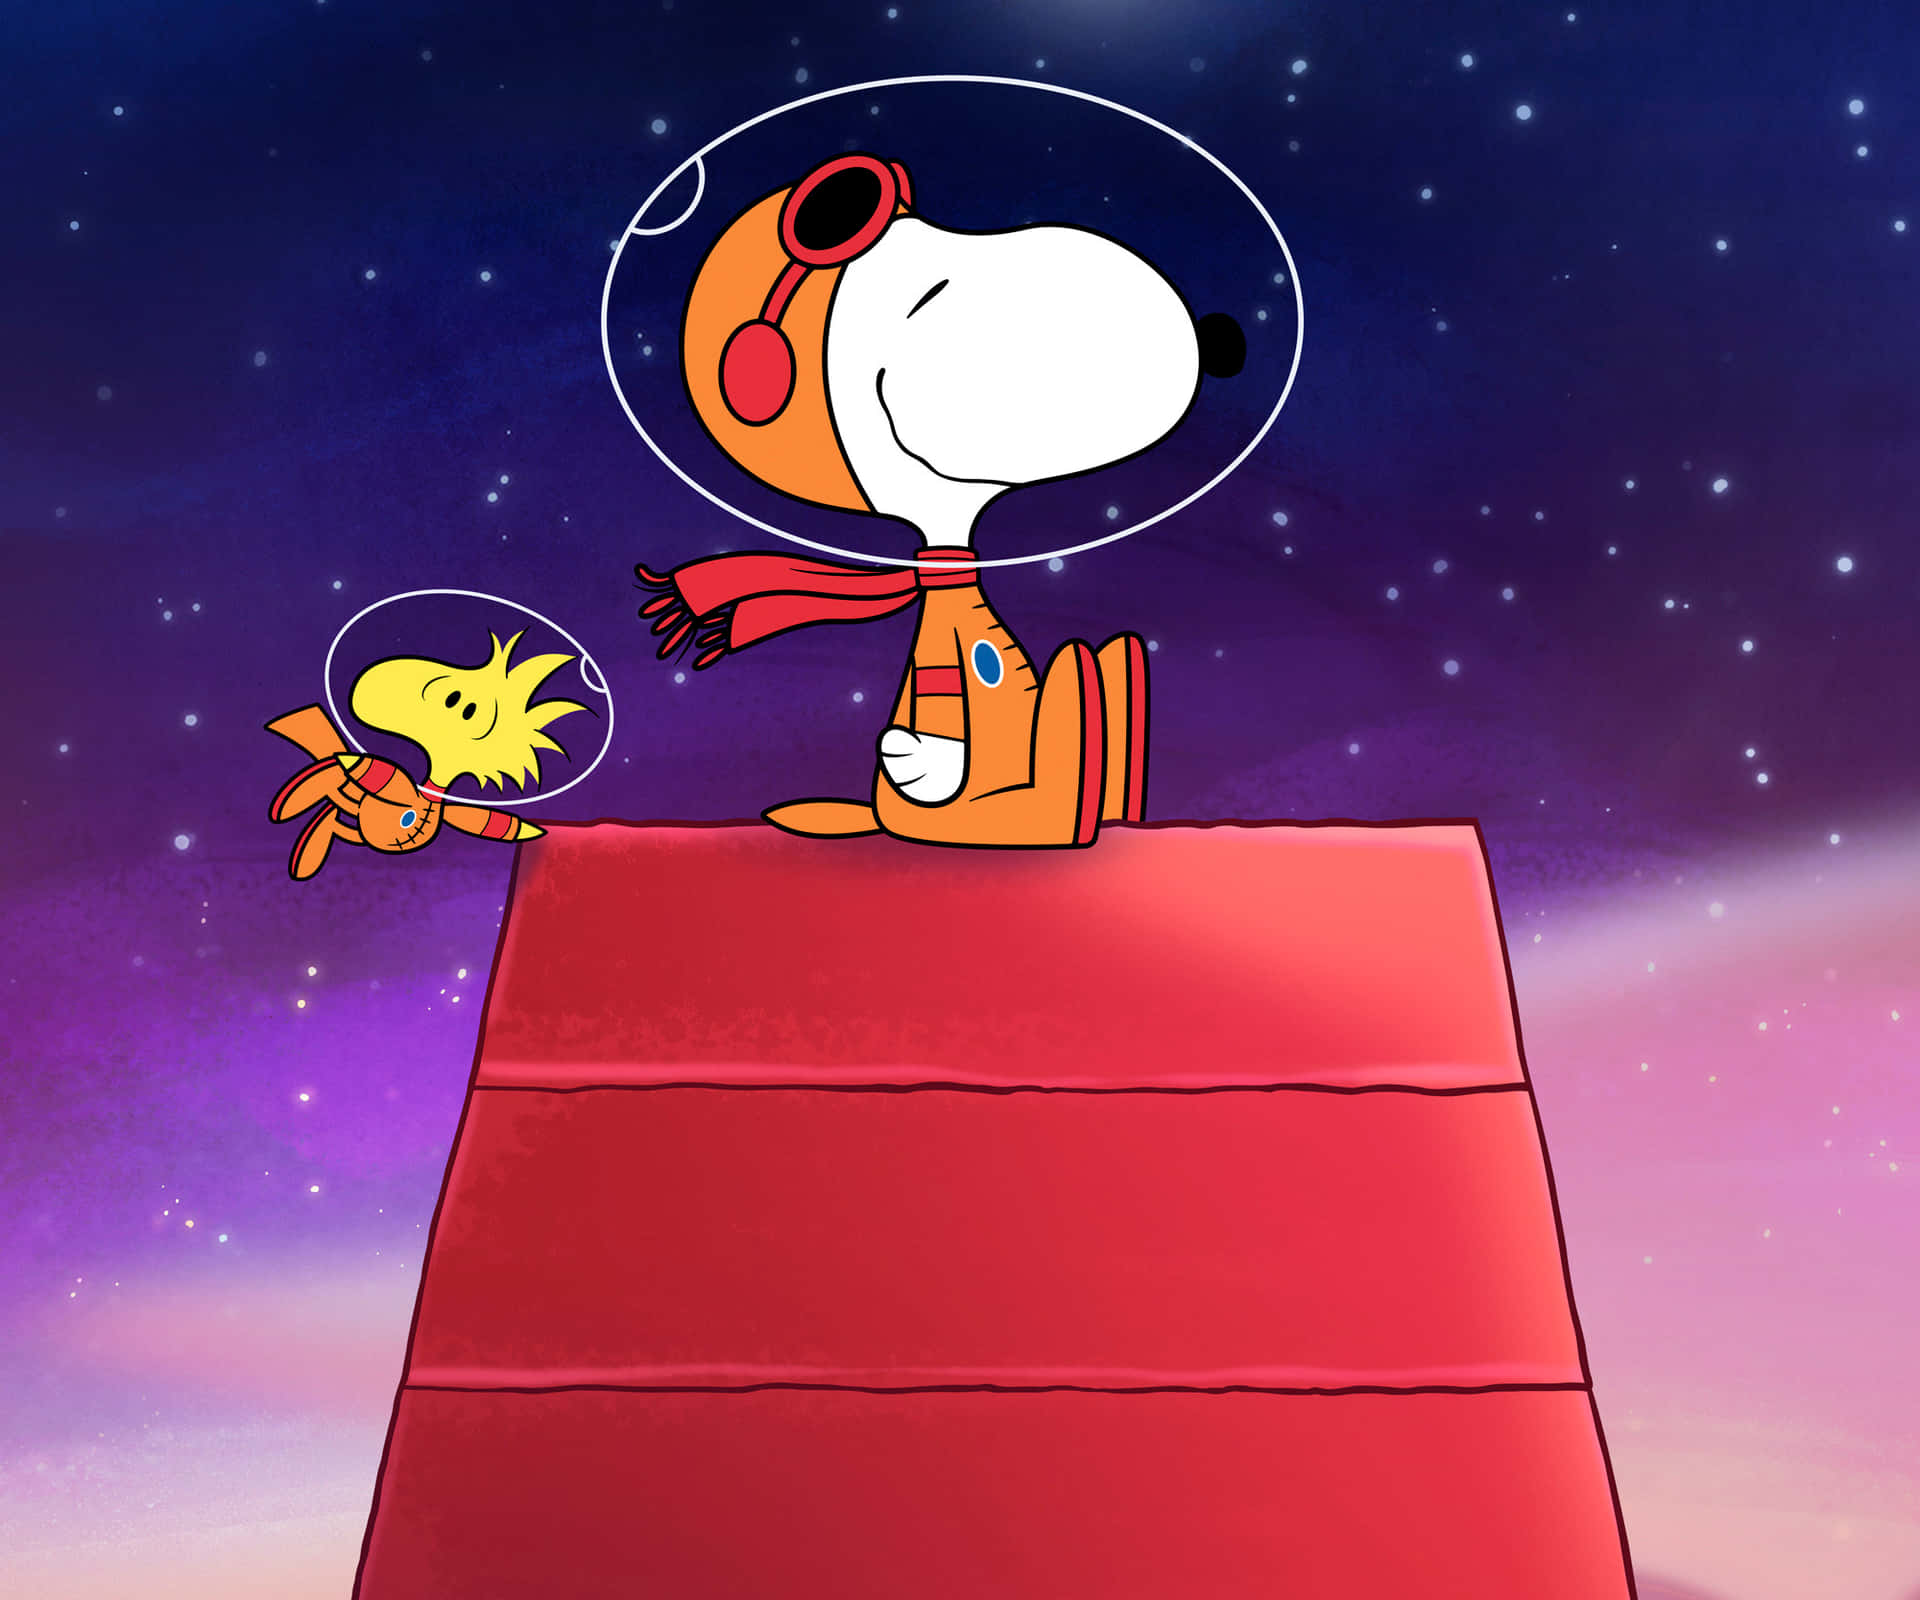 Imagende Snoopy Disfrutando De Un Día De Verano